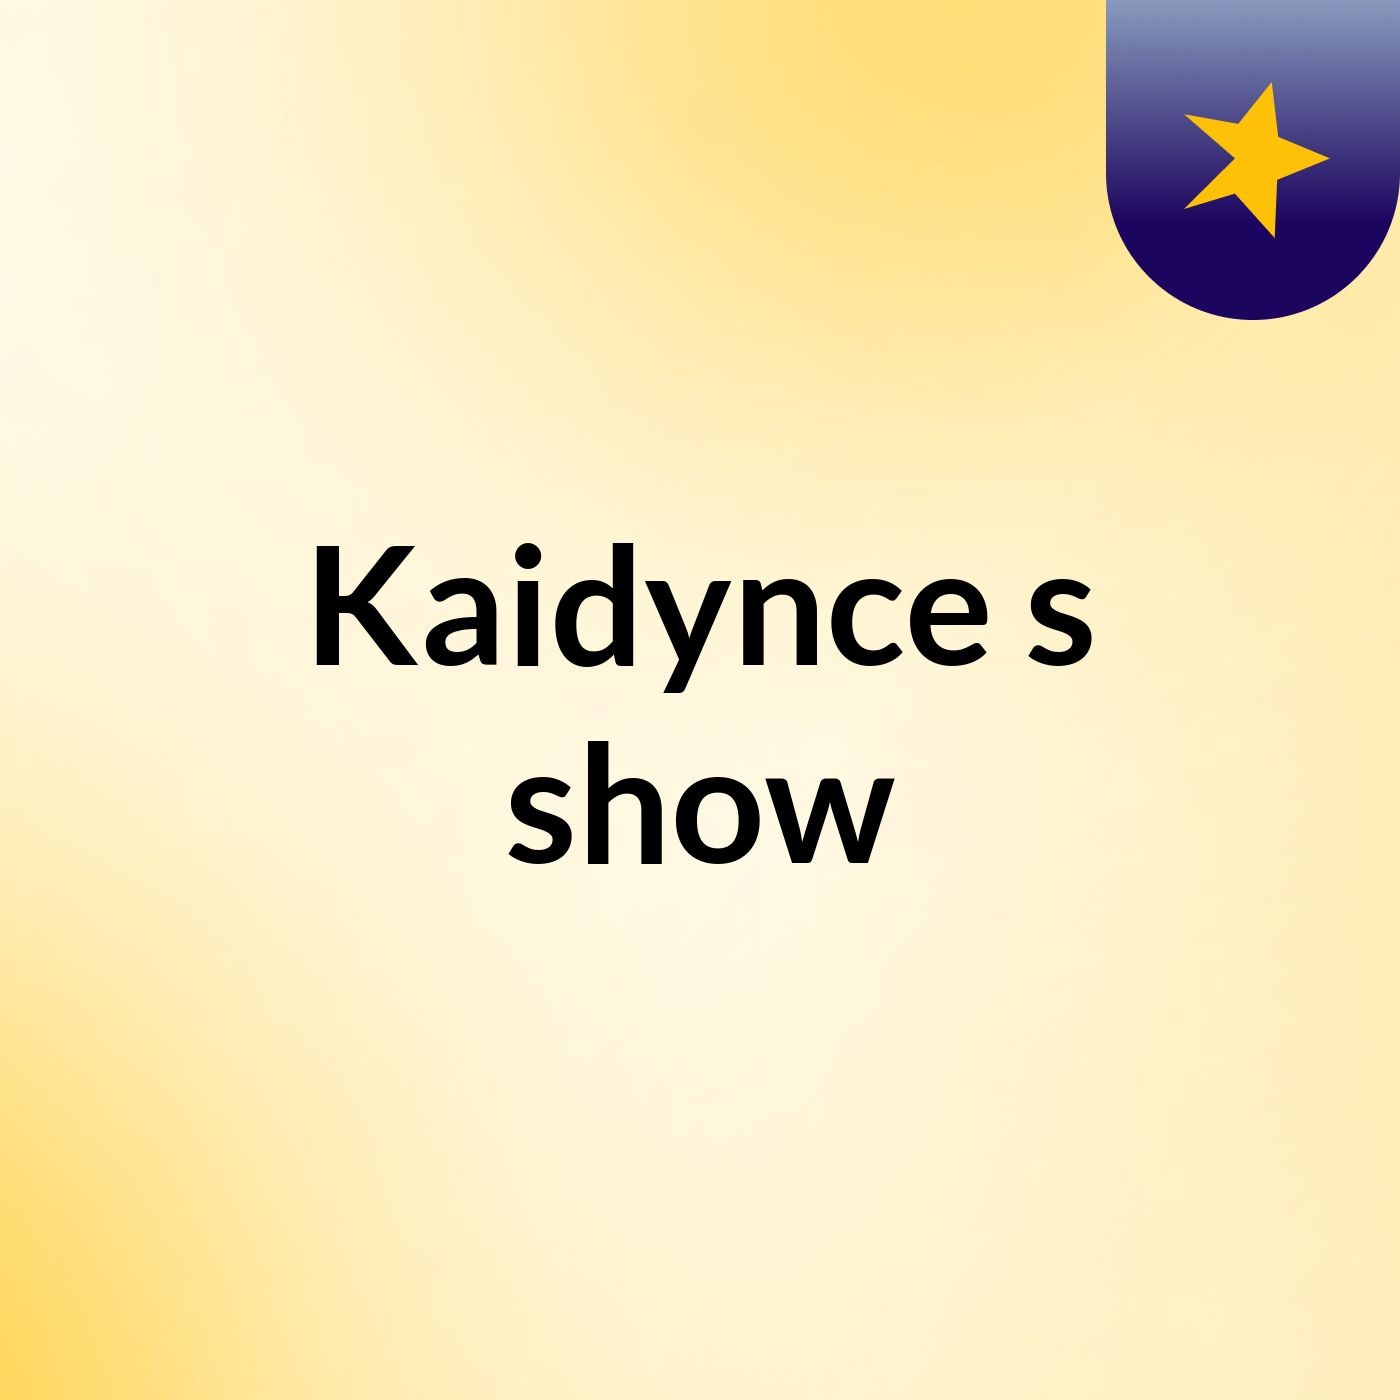 Kaidynce's show